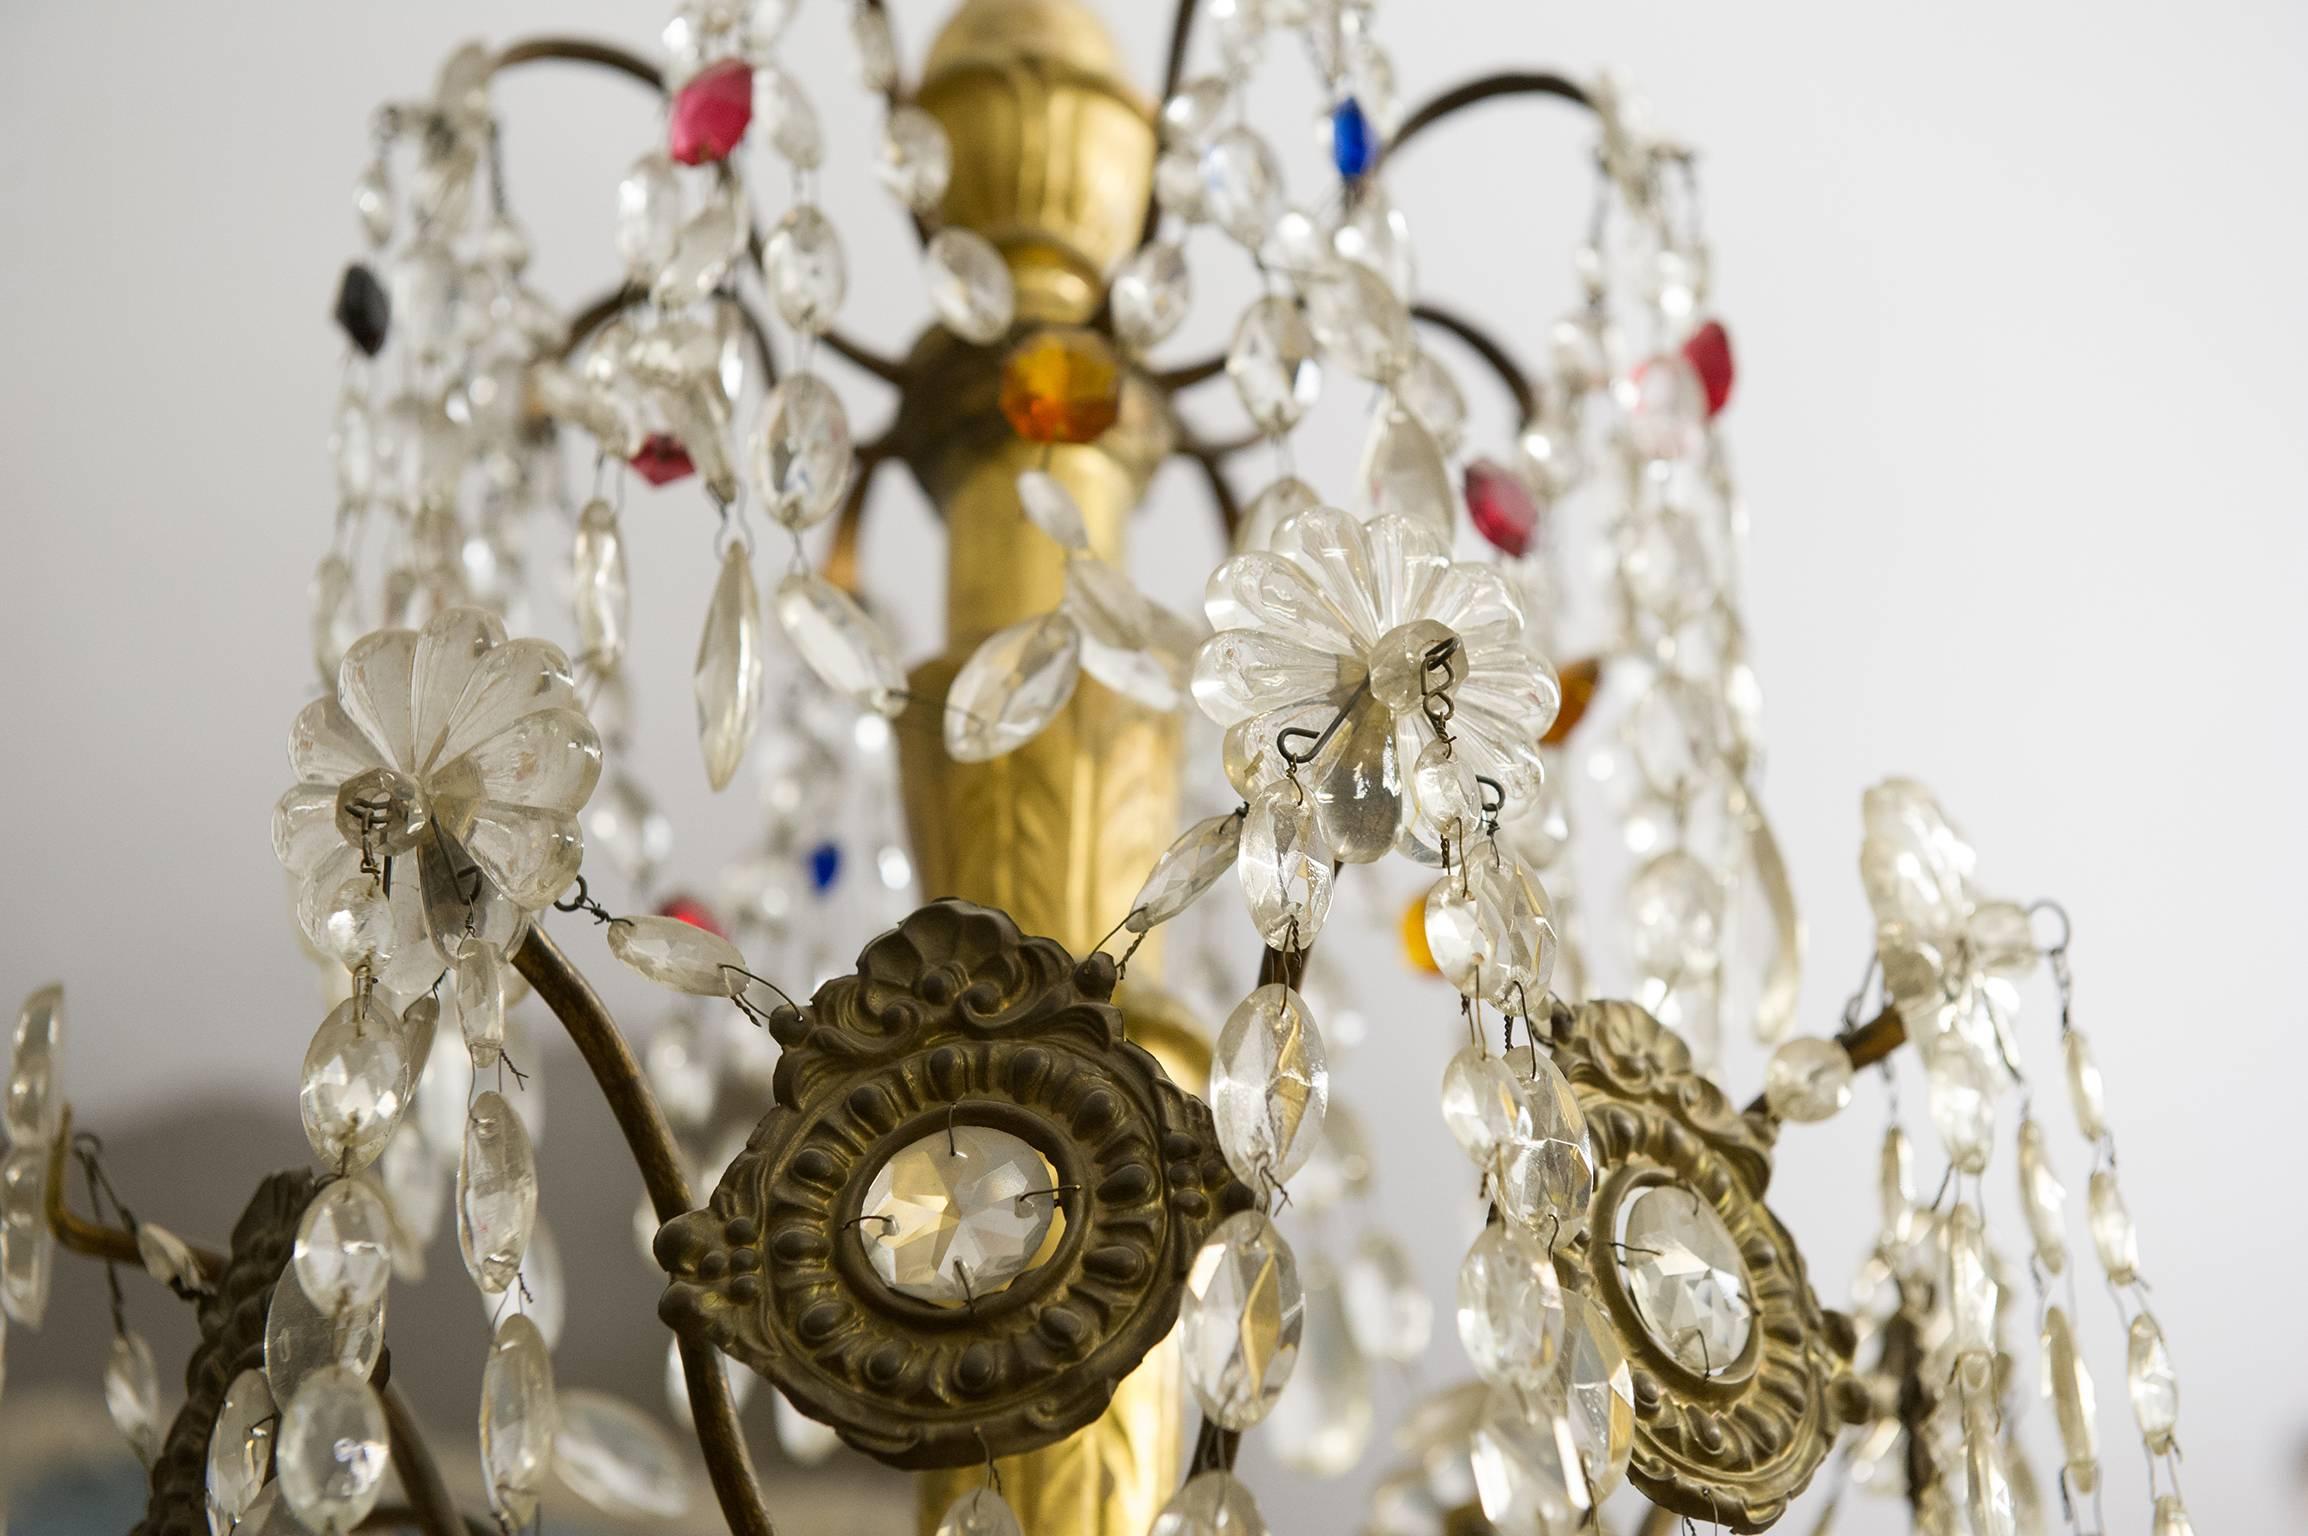 genoese crystal chandeliers